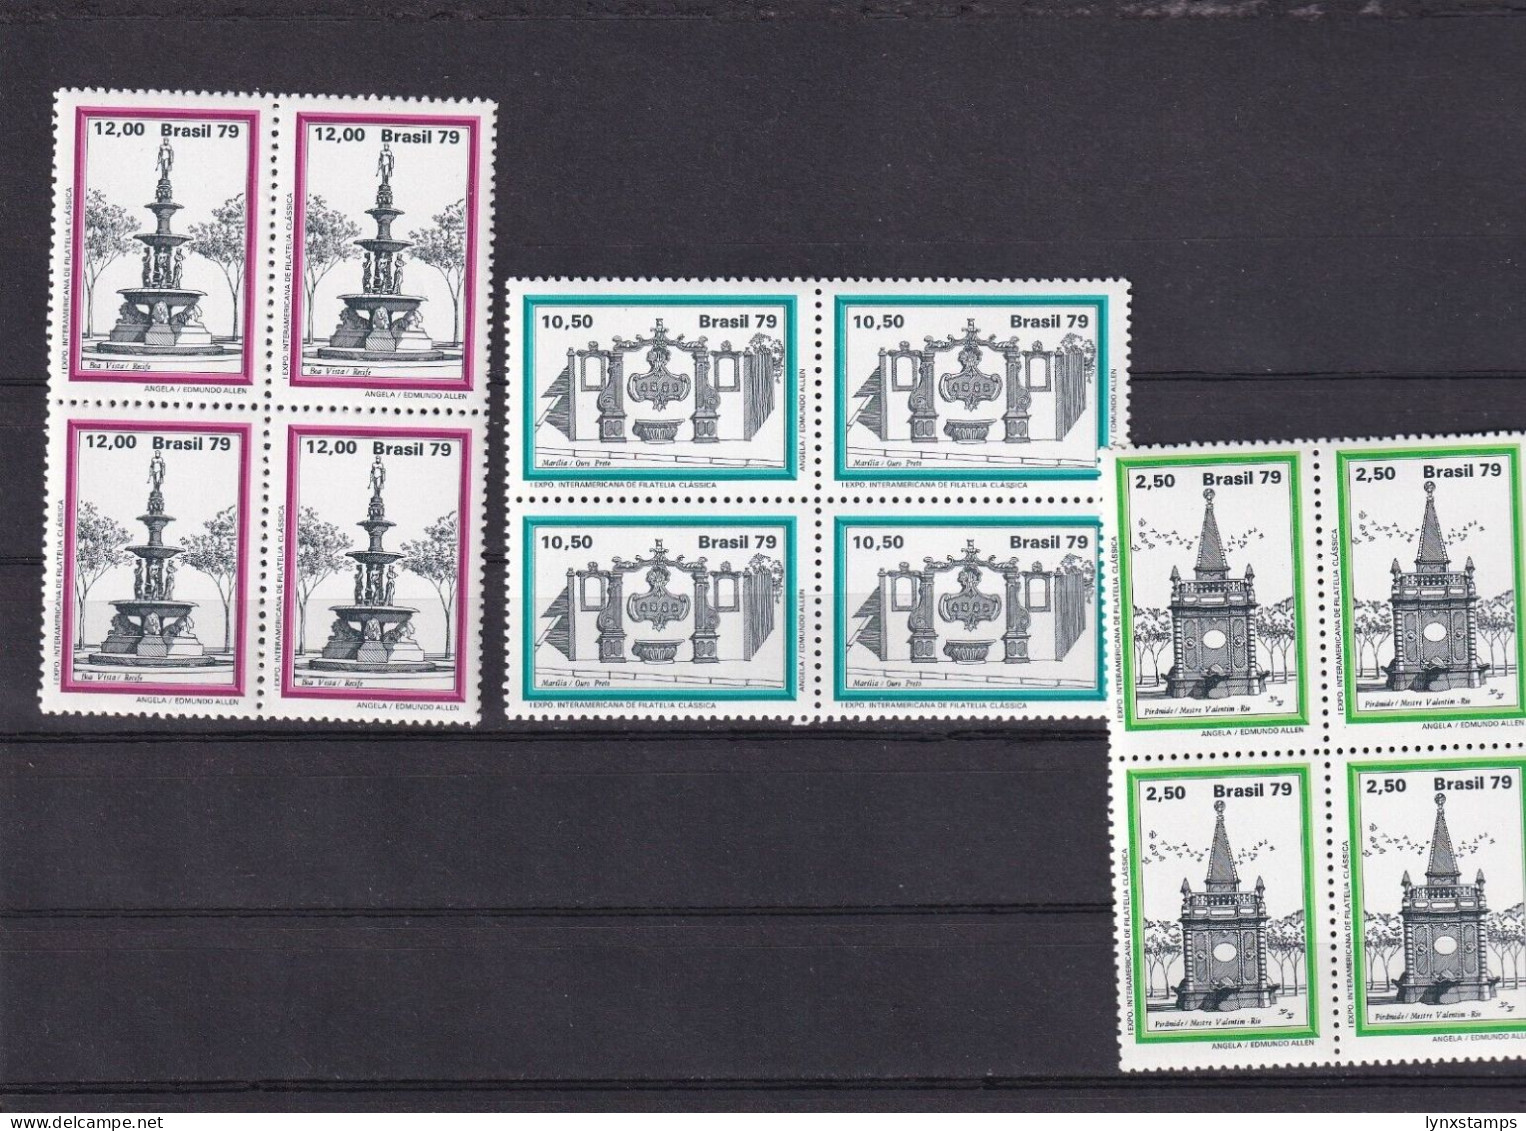 SA06 Brazil 1979 Third World Thematic Stamp Exhibition "Brasiliana 79" Blocks - Ongebruikt